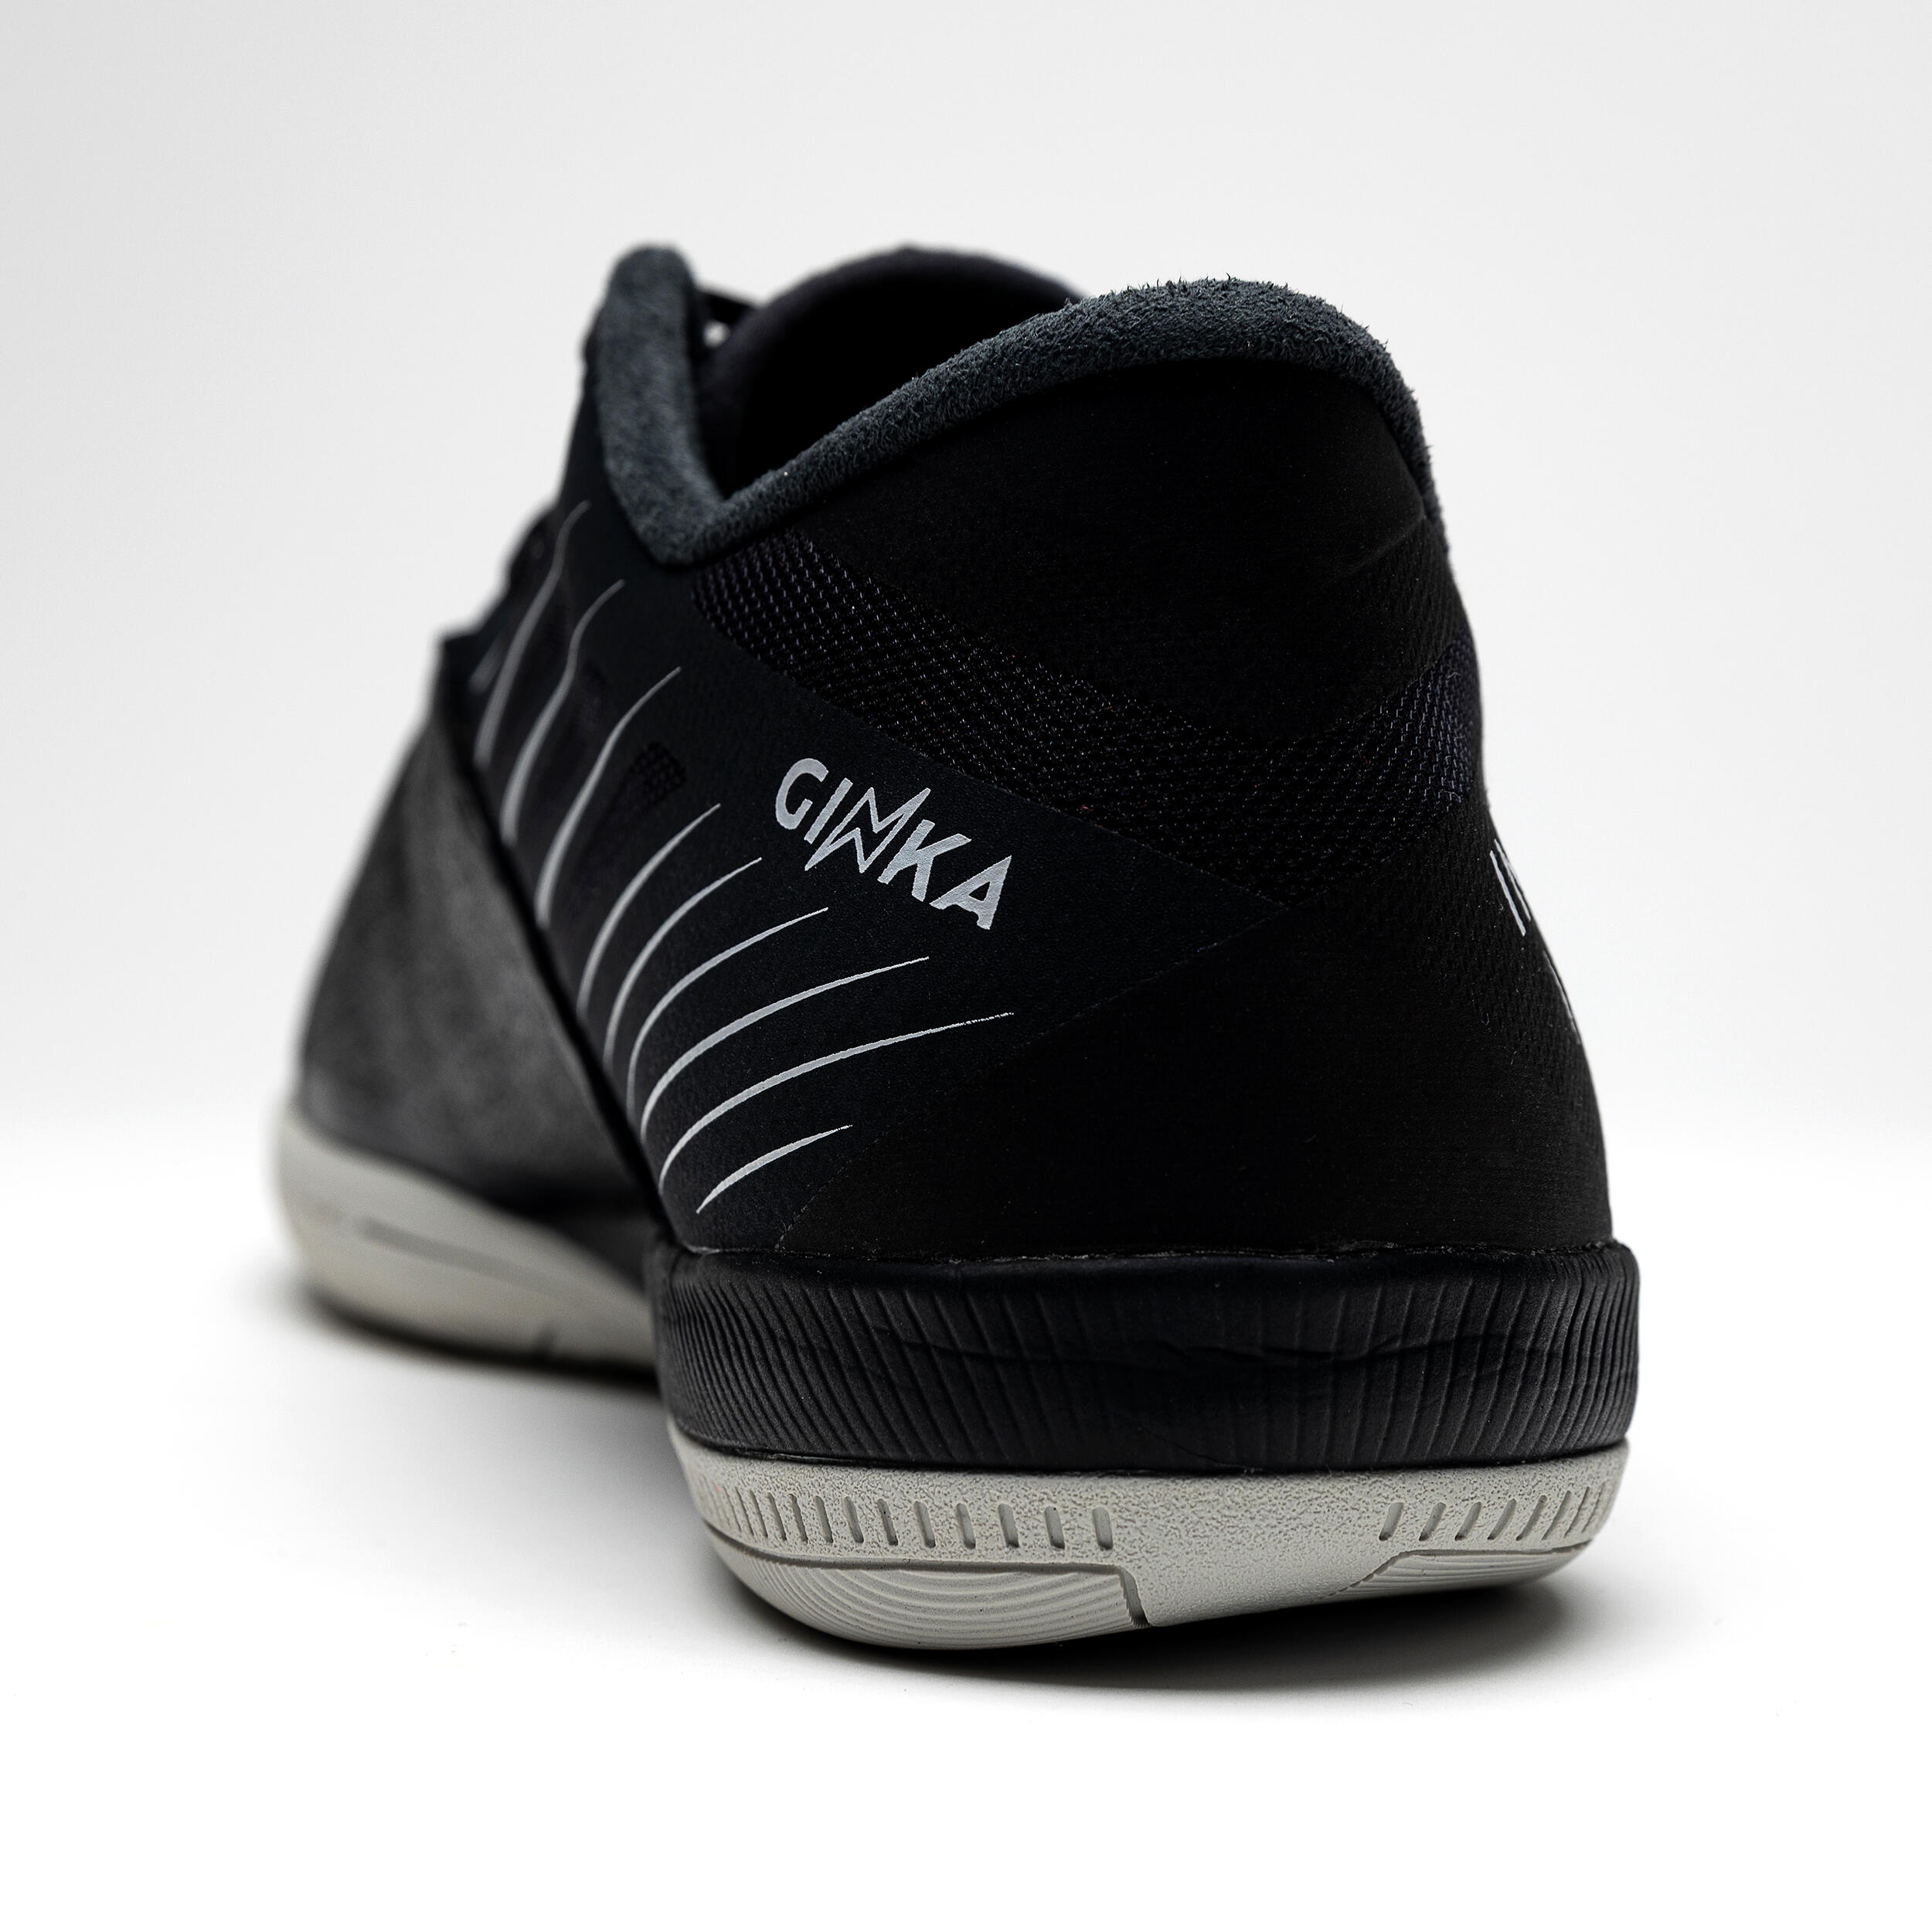 Futsal Leather Shoes Ginka 900 - Black 6/8